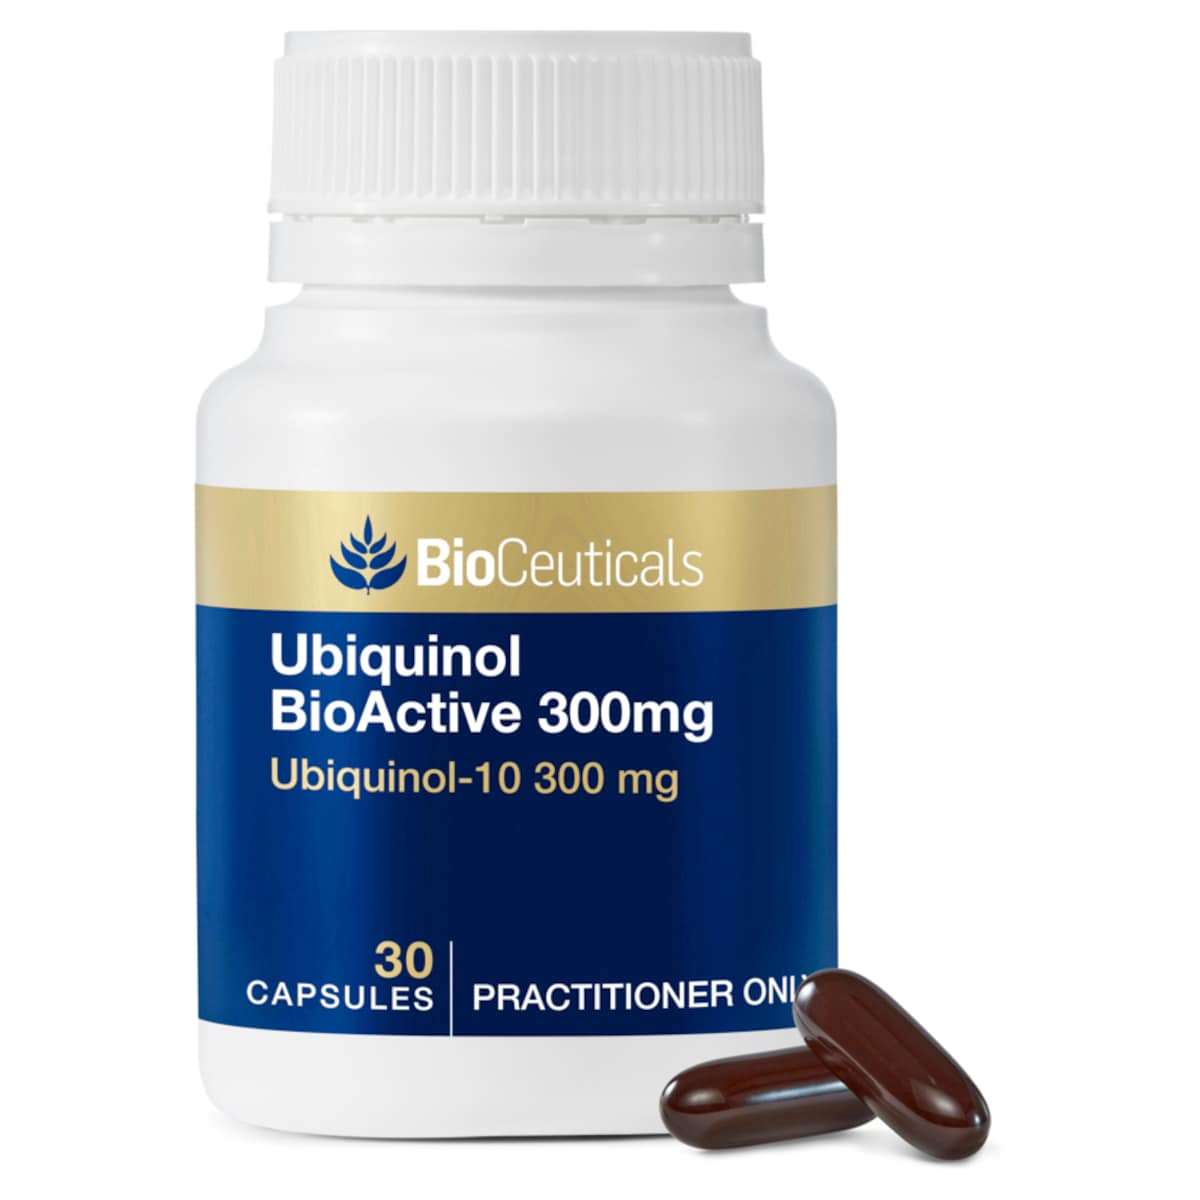 BioCeuticals Ubiquinol BioActive 300mg 30 Capsules Australia